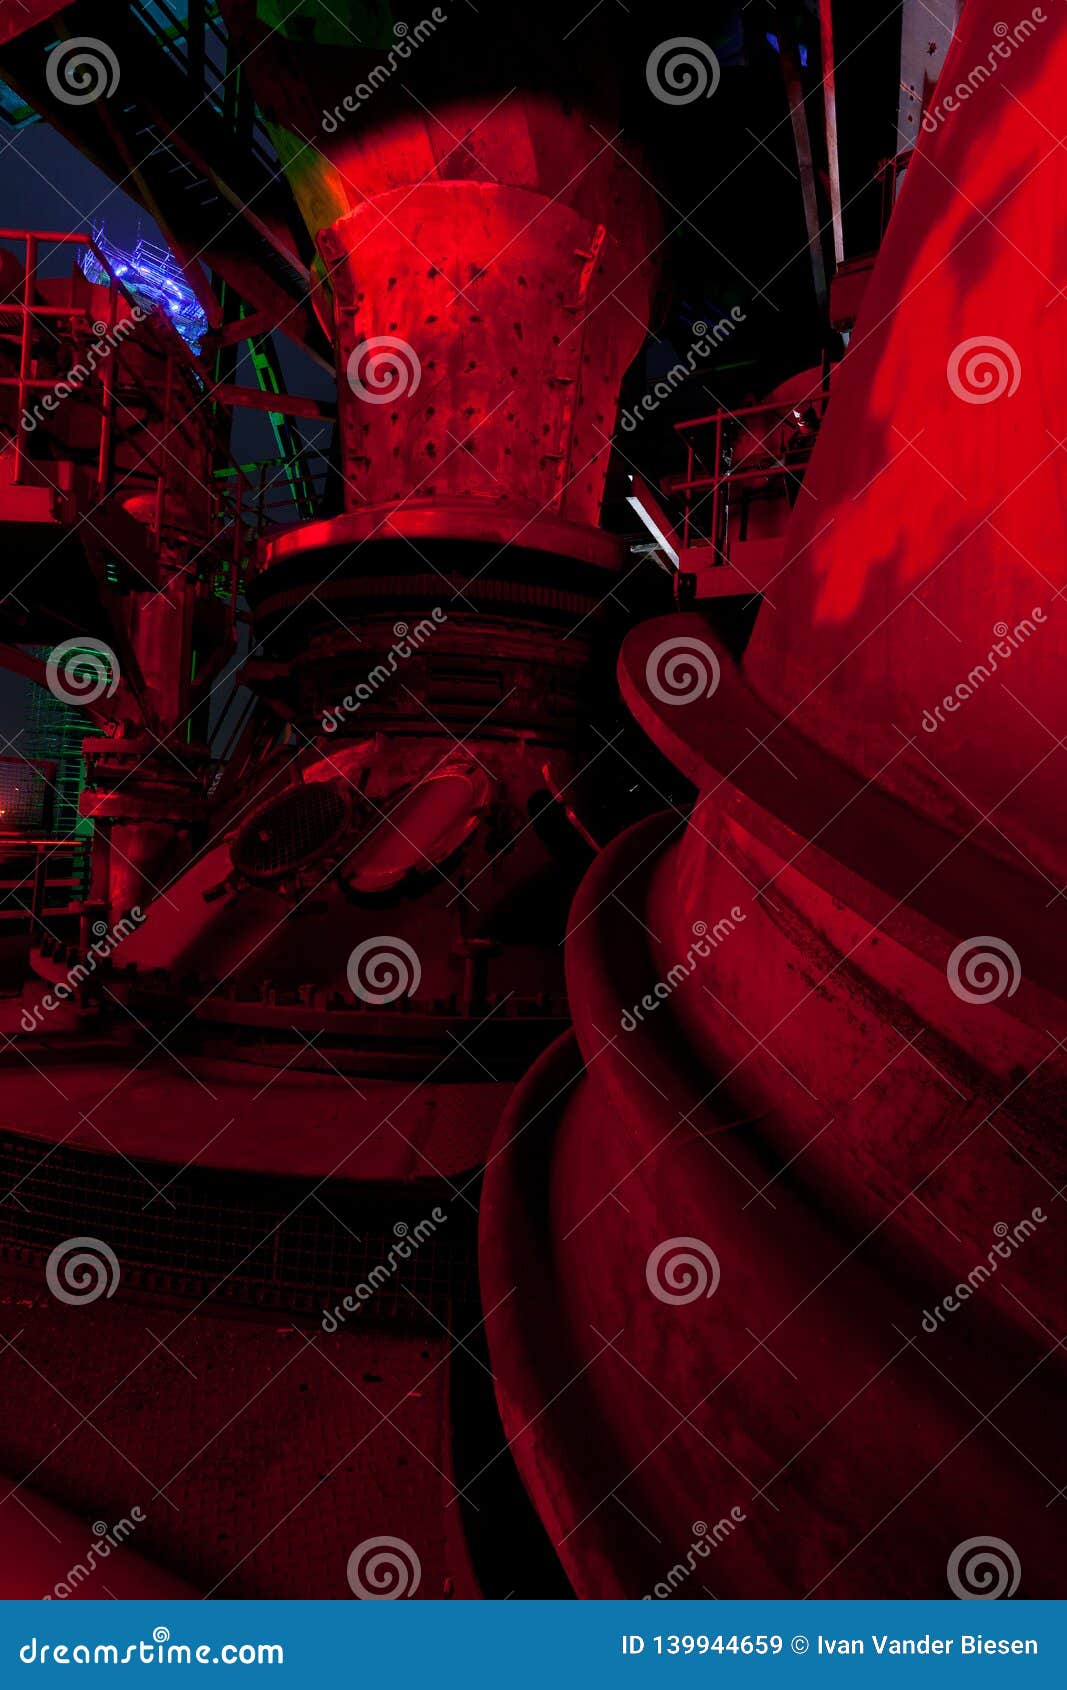 hver dag radioaktivitet Udvikle Pot Blast Furnace Landschaftspark, Duisburg, Germany, Night Stock Image -  Image of metal, night: 139944659